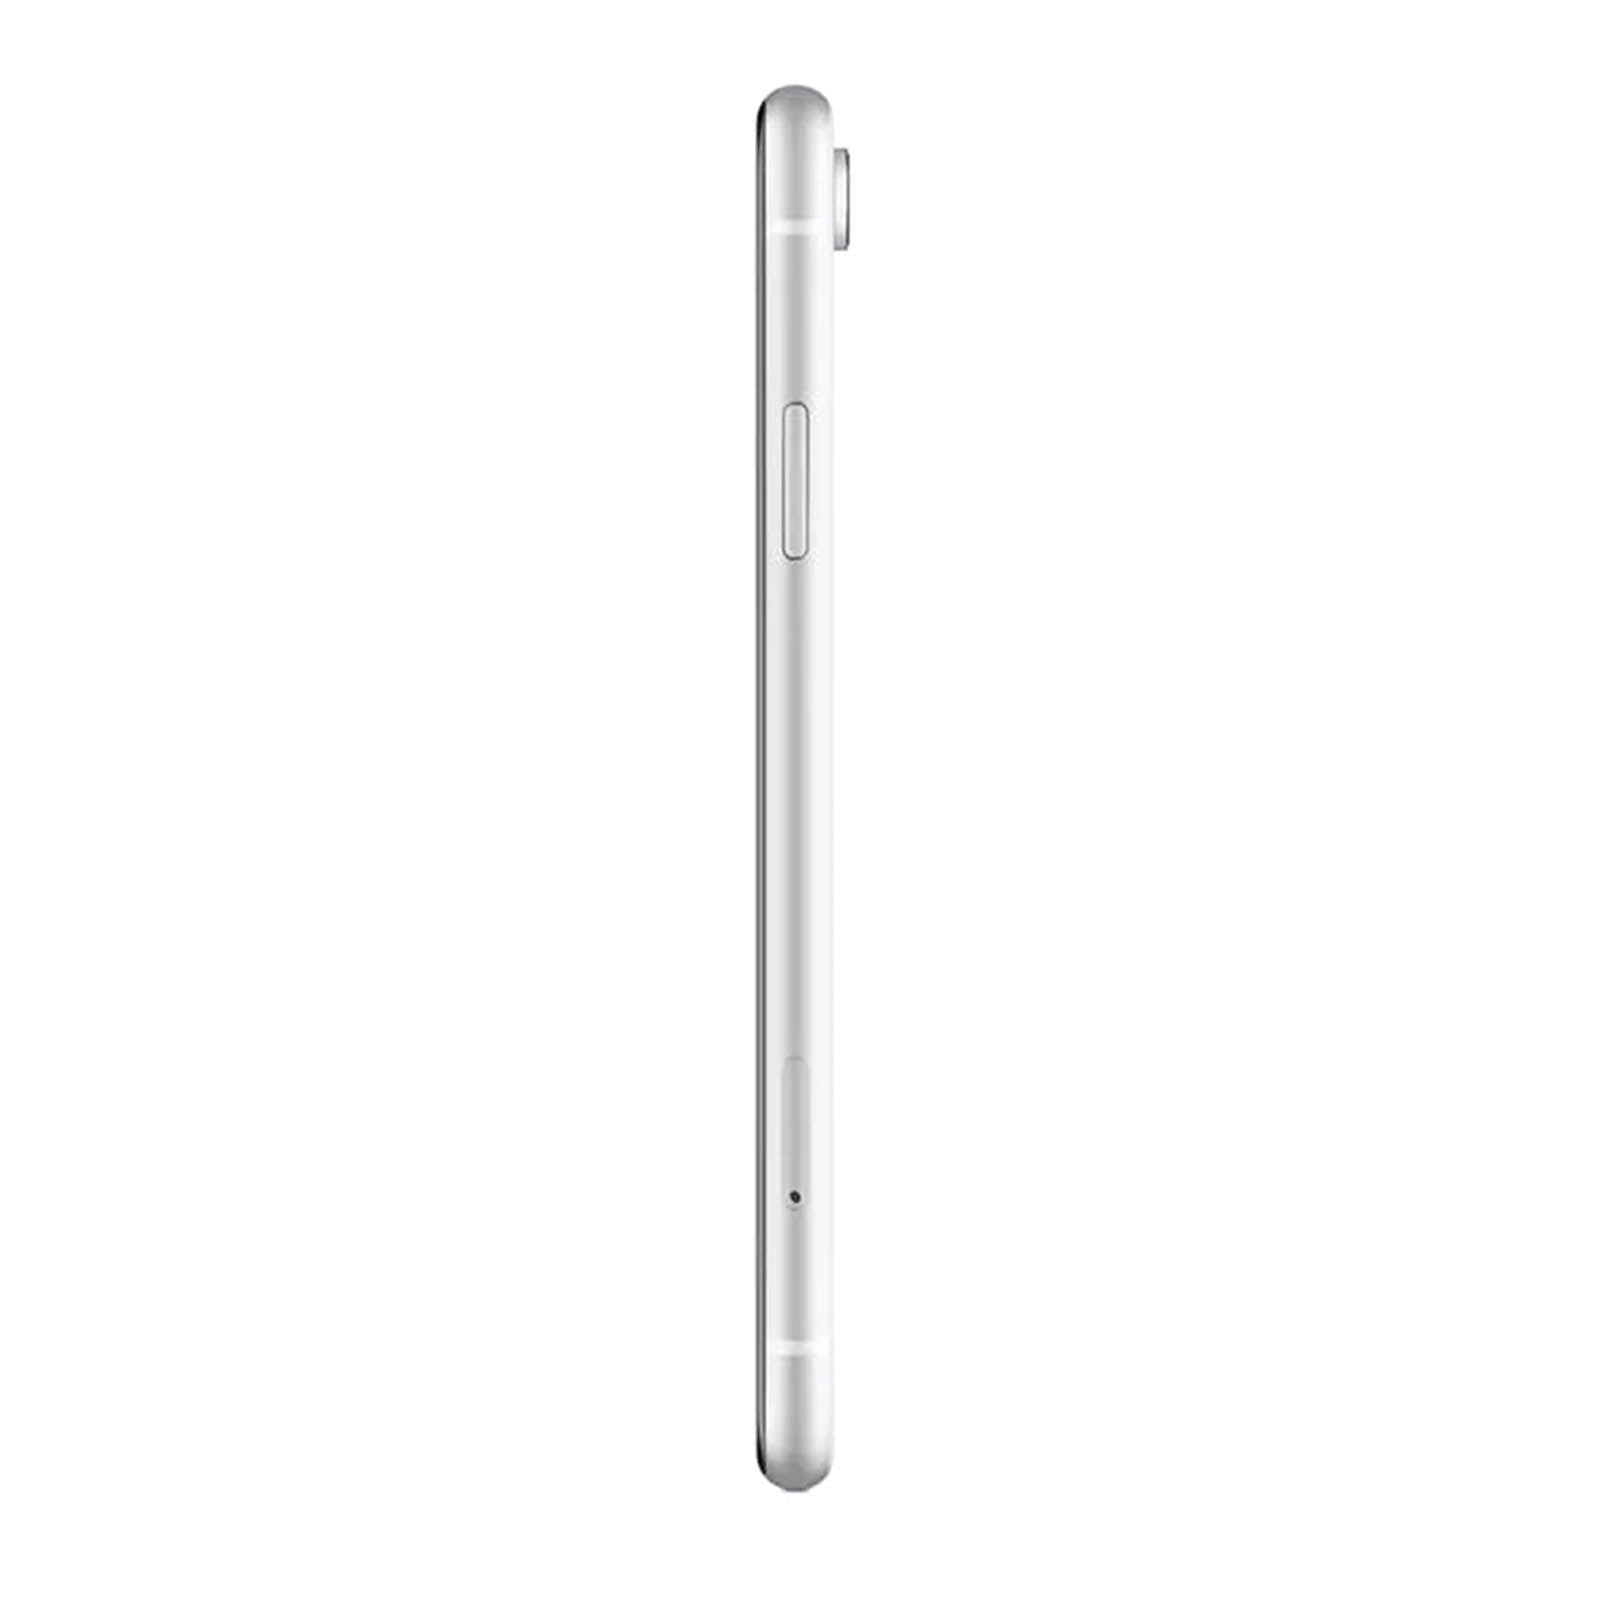 Apple iPhone XR 128GB White Fair - T-Mobile